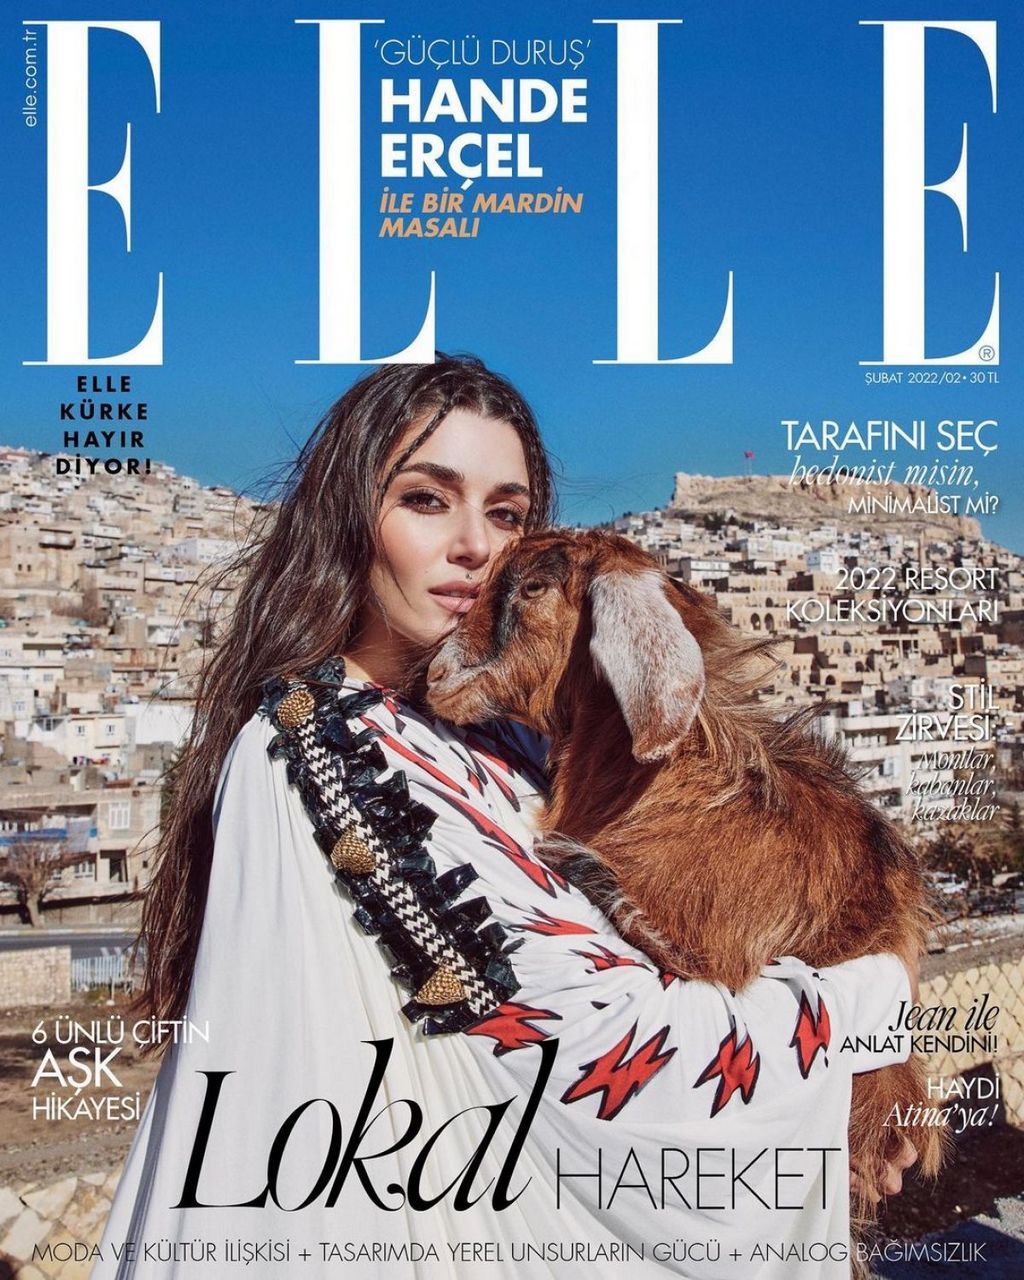 Hande Ercel For Elle Magazine Turkey February